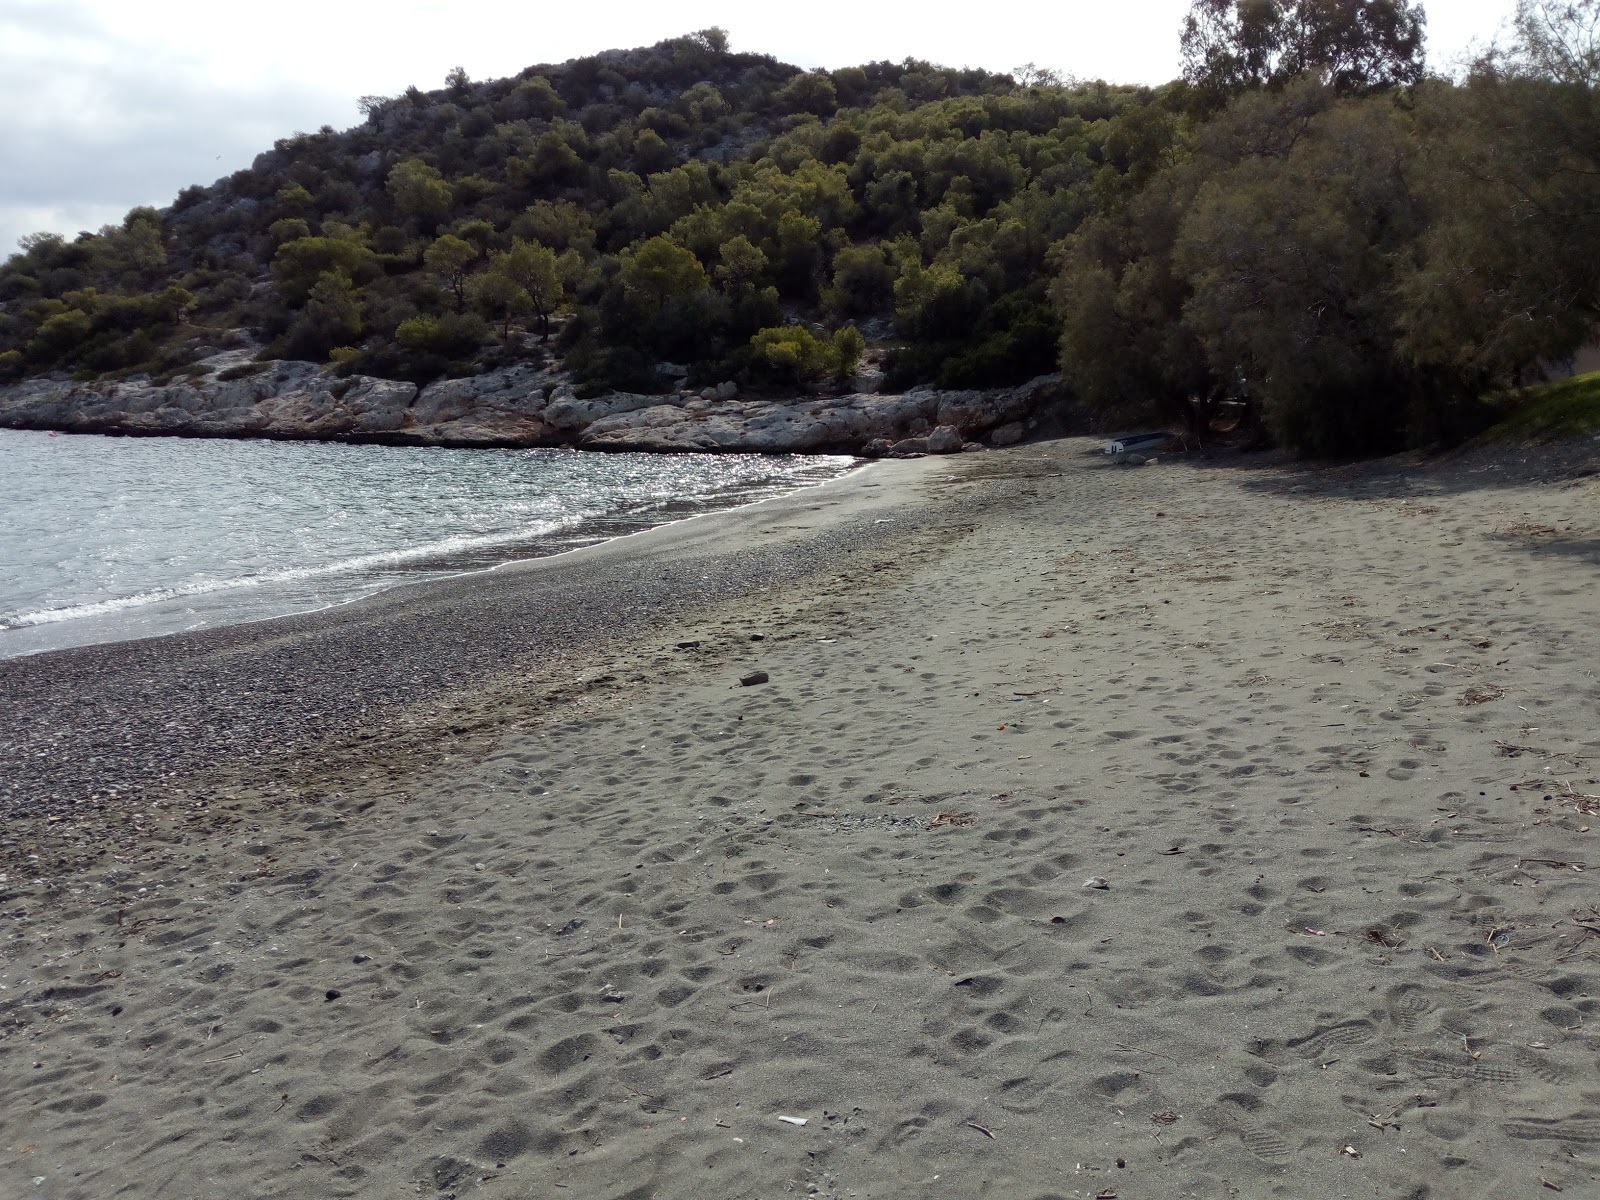 Fotografie cu Paralia Aias II cu o suprafață de nisip maro